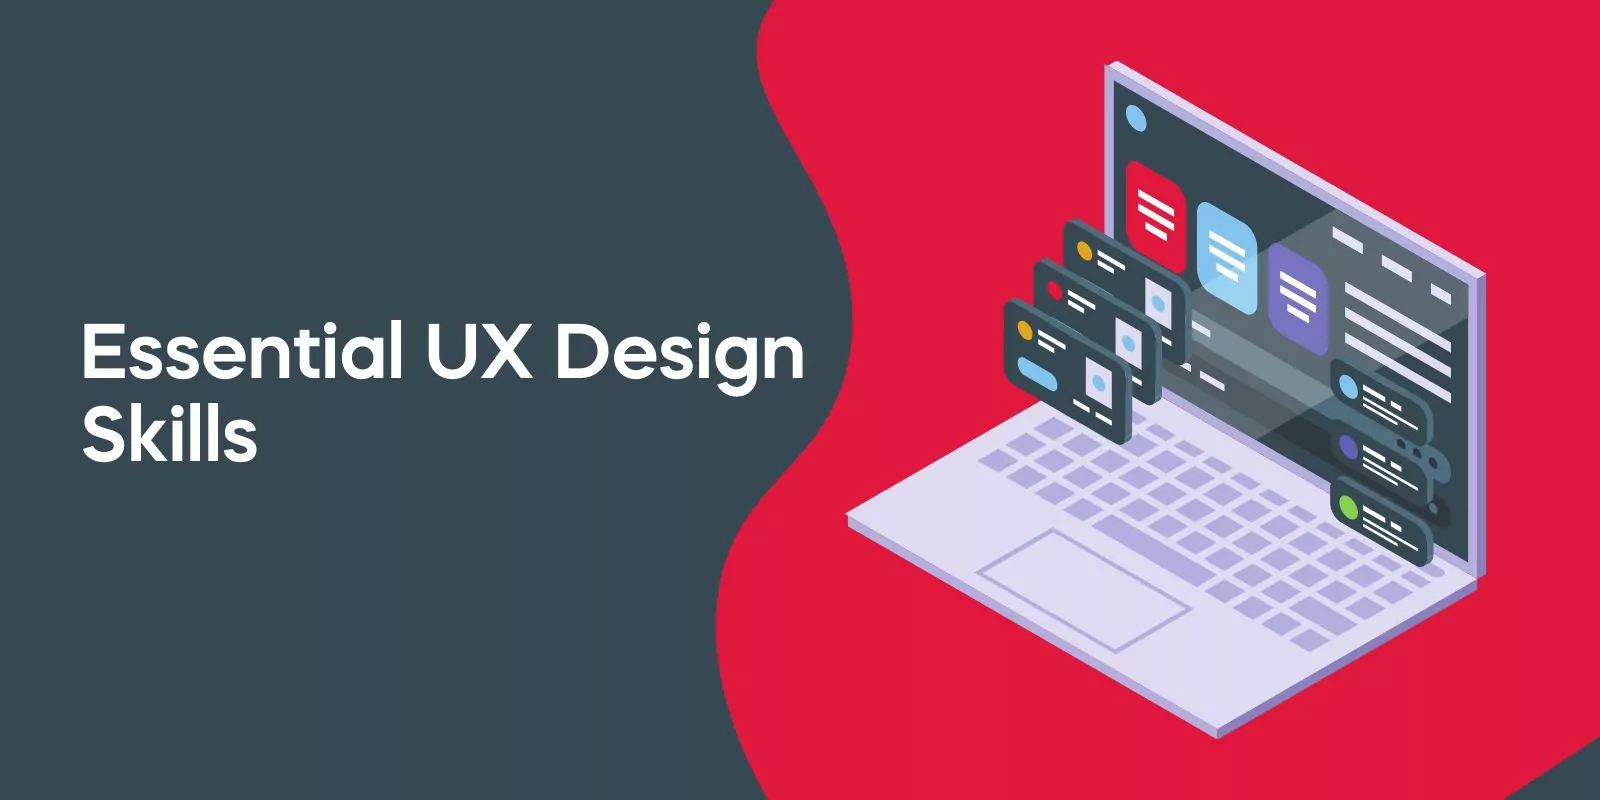 Essential UX Design Skills